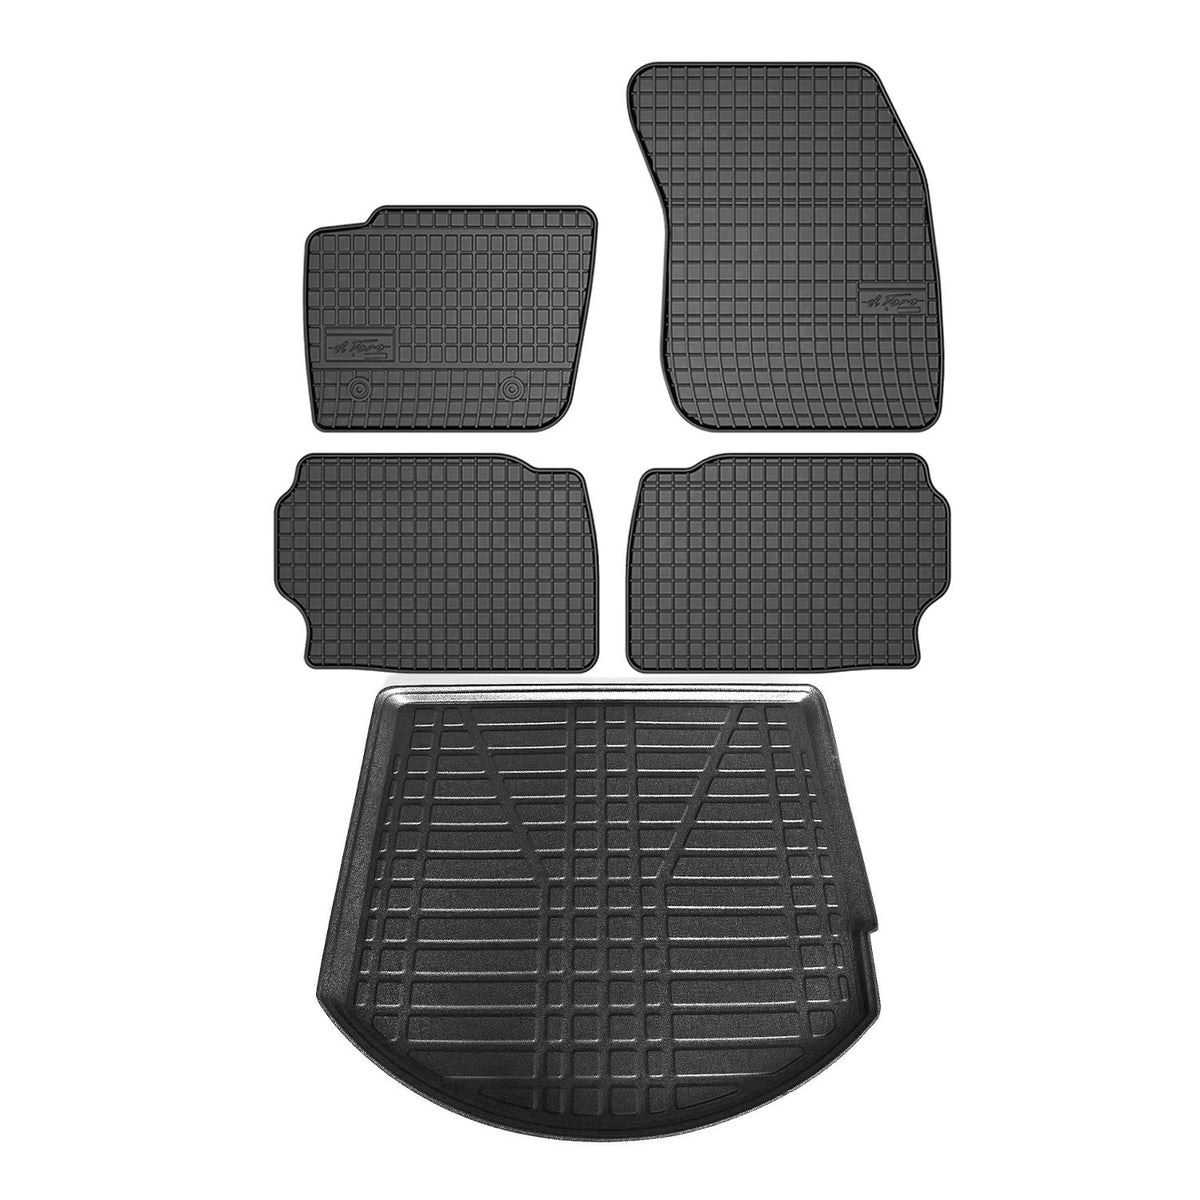 Fußmatten & Kofferraumwanne Set für Ford Mondeo Kombi 2007-2015 Gummi Schwarz 5x